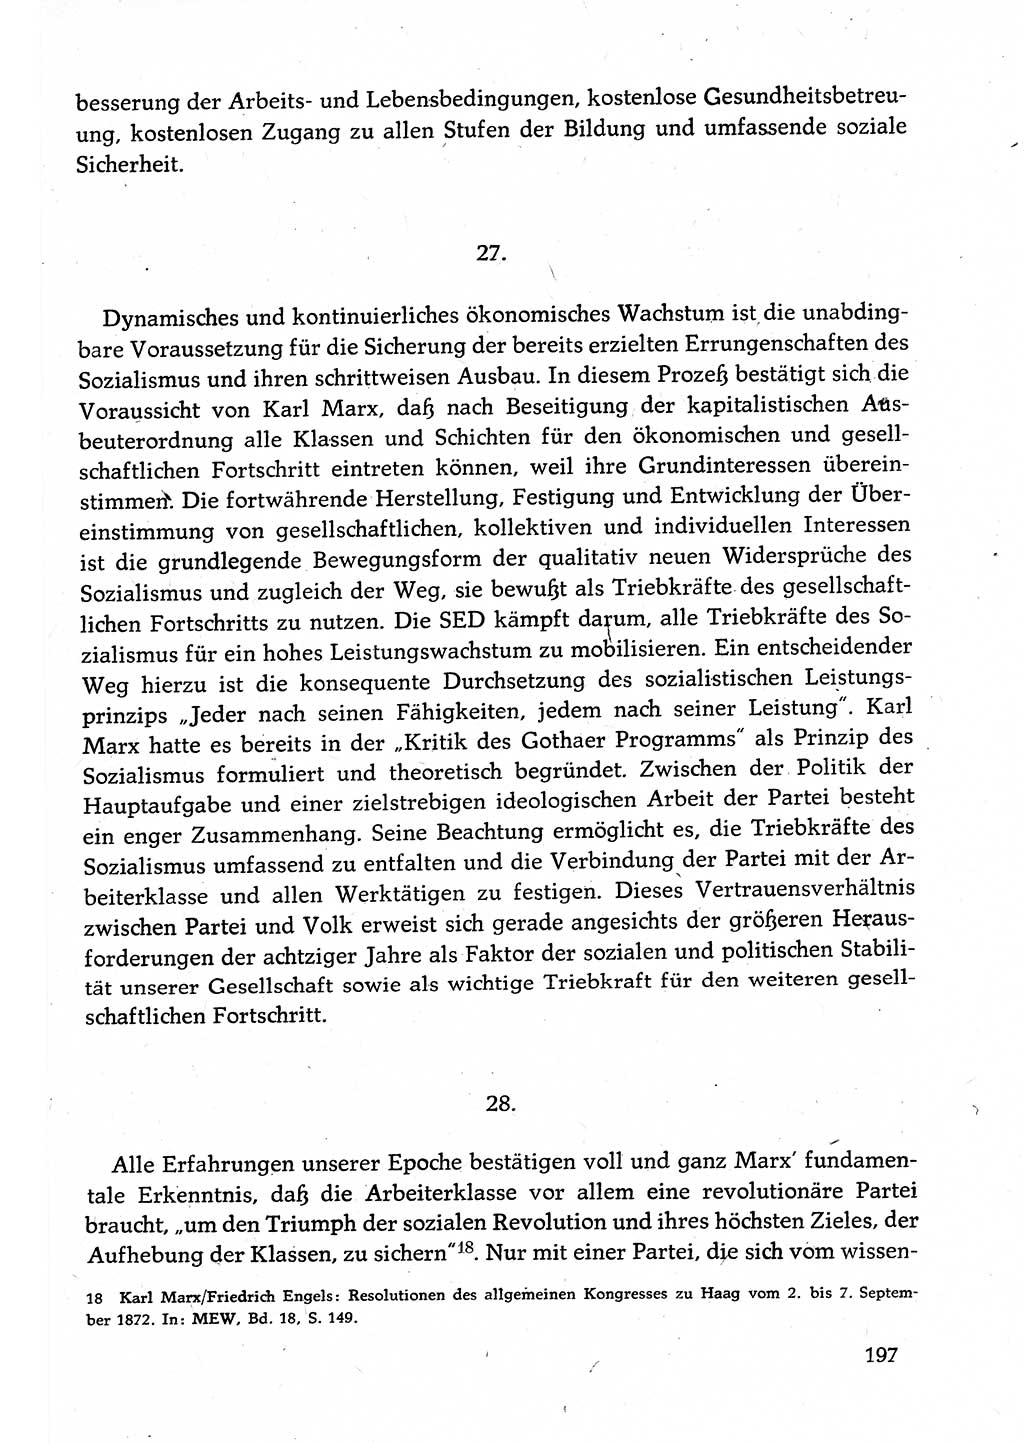 Dokumente der Sozialistischen Einheitspartei Deutschlands (SED) [Deutsche Demokratische Republik (DDR)] 1982-1983, Seite 197 (Dok. SED DDR 1982-1983, S. 197)